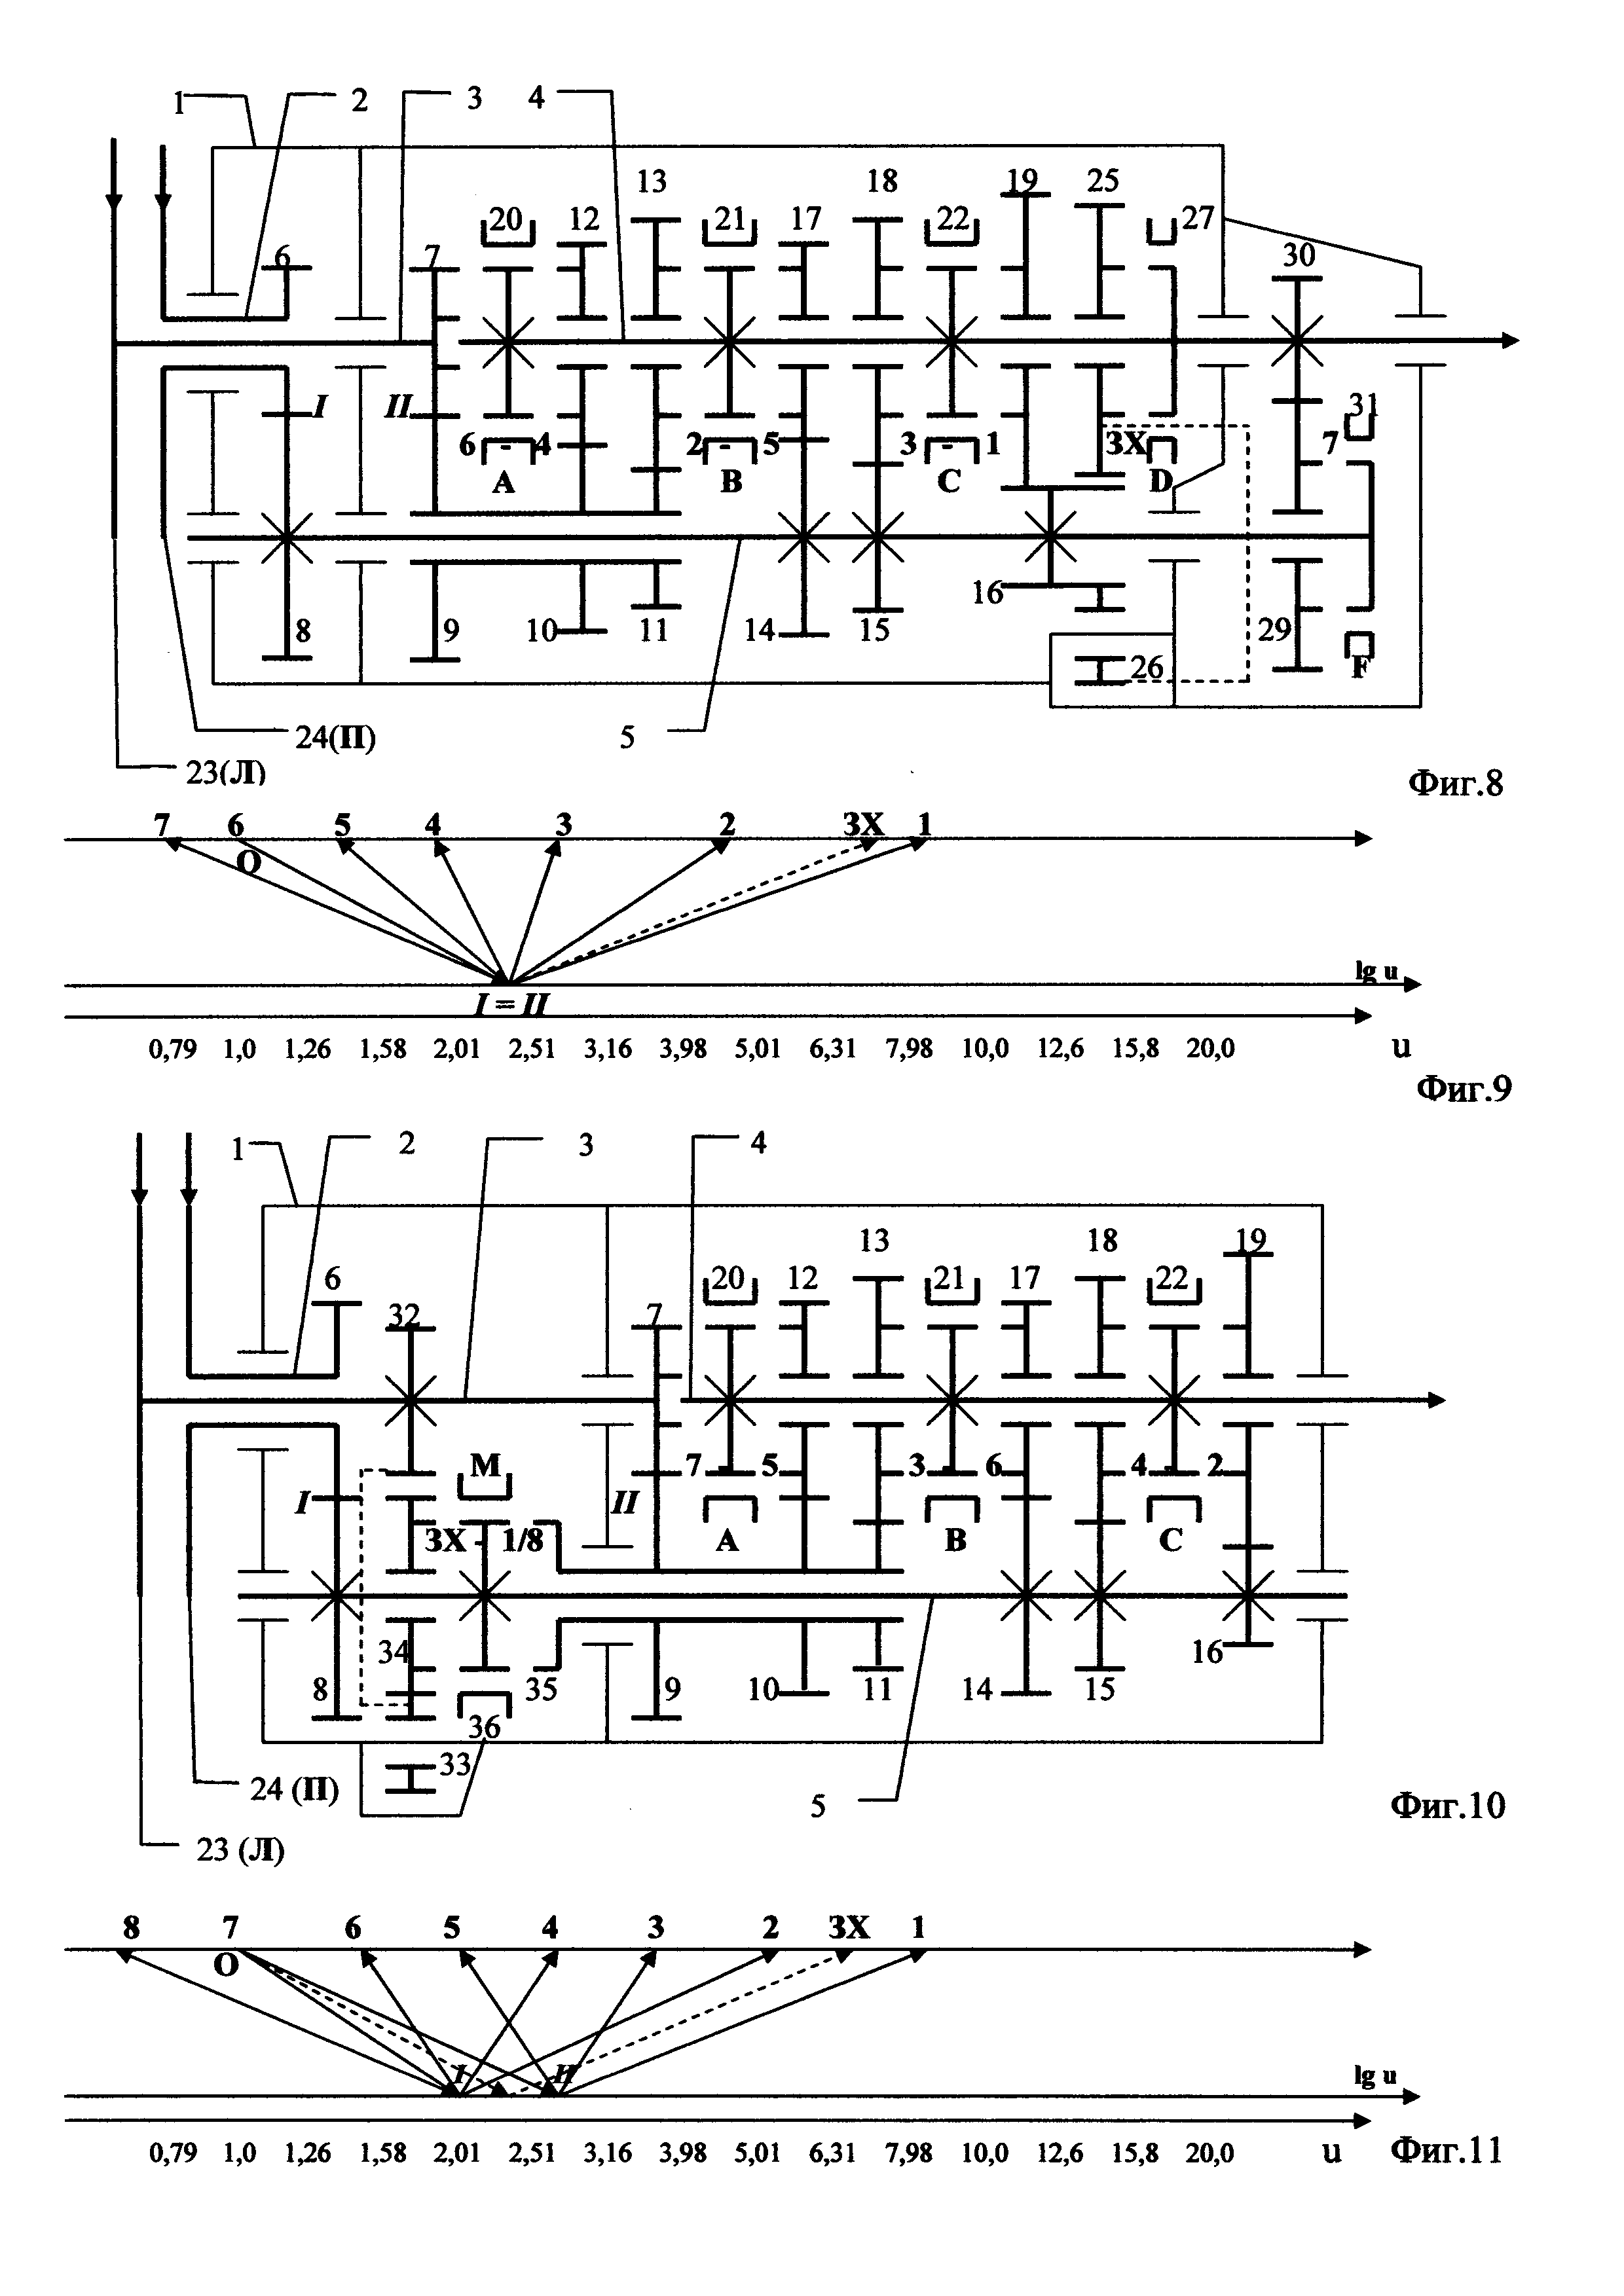 Соосная коробка передач с двумя сцеплениями (варианты конструкции)